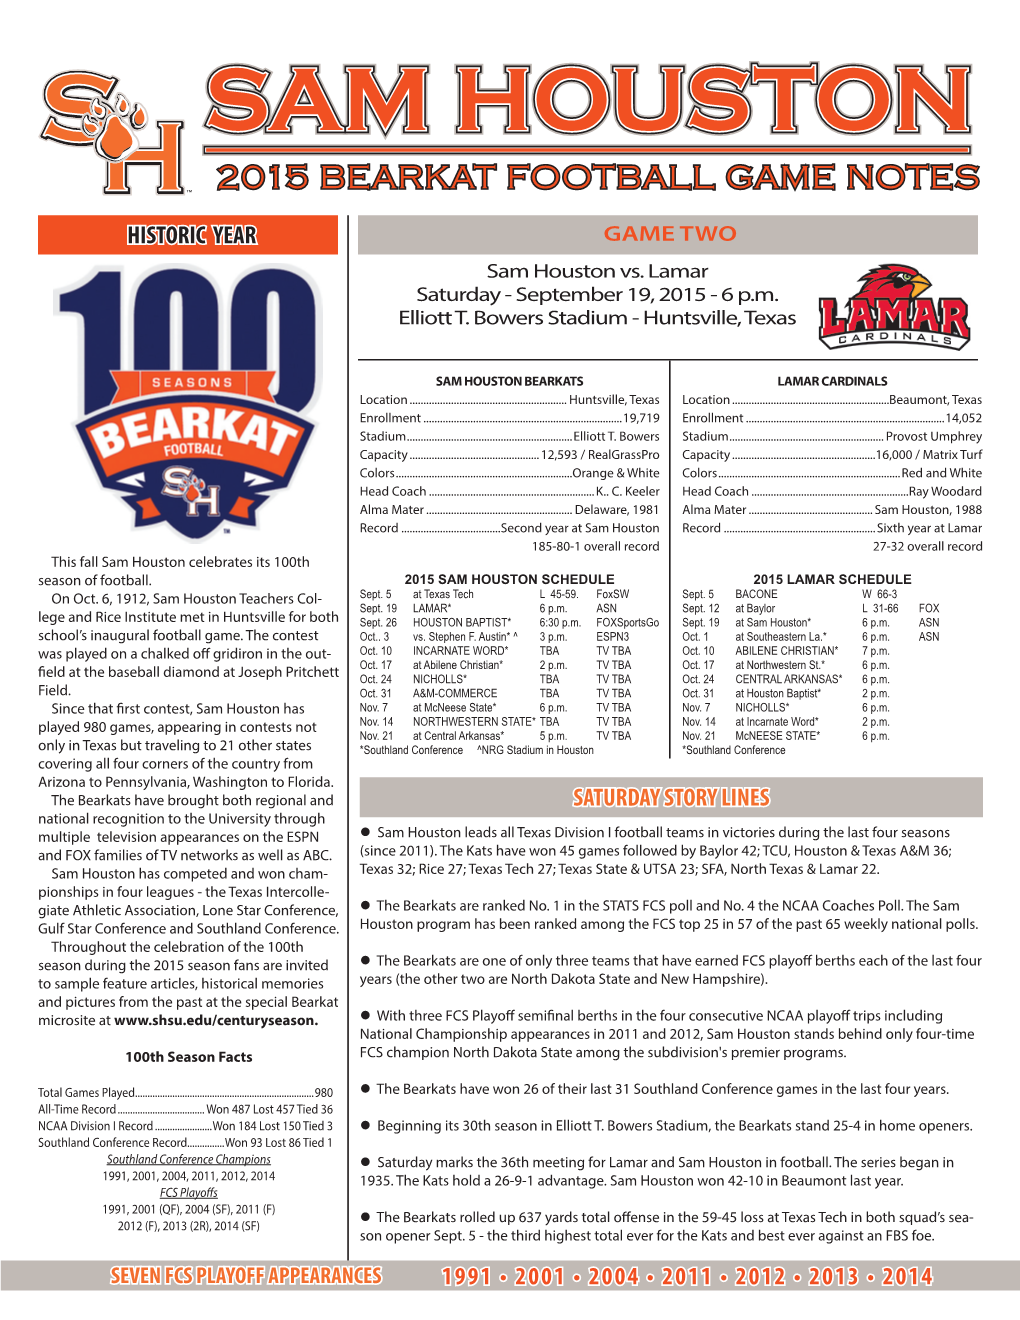 Sam Houston 2015 Bearkat Football Game Notes